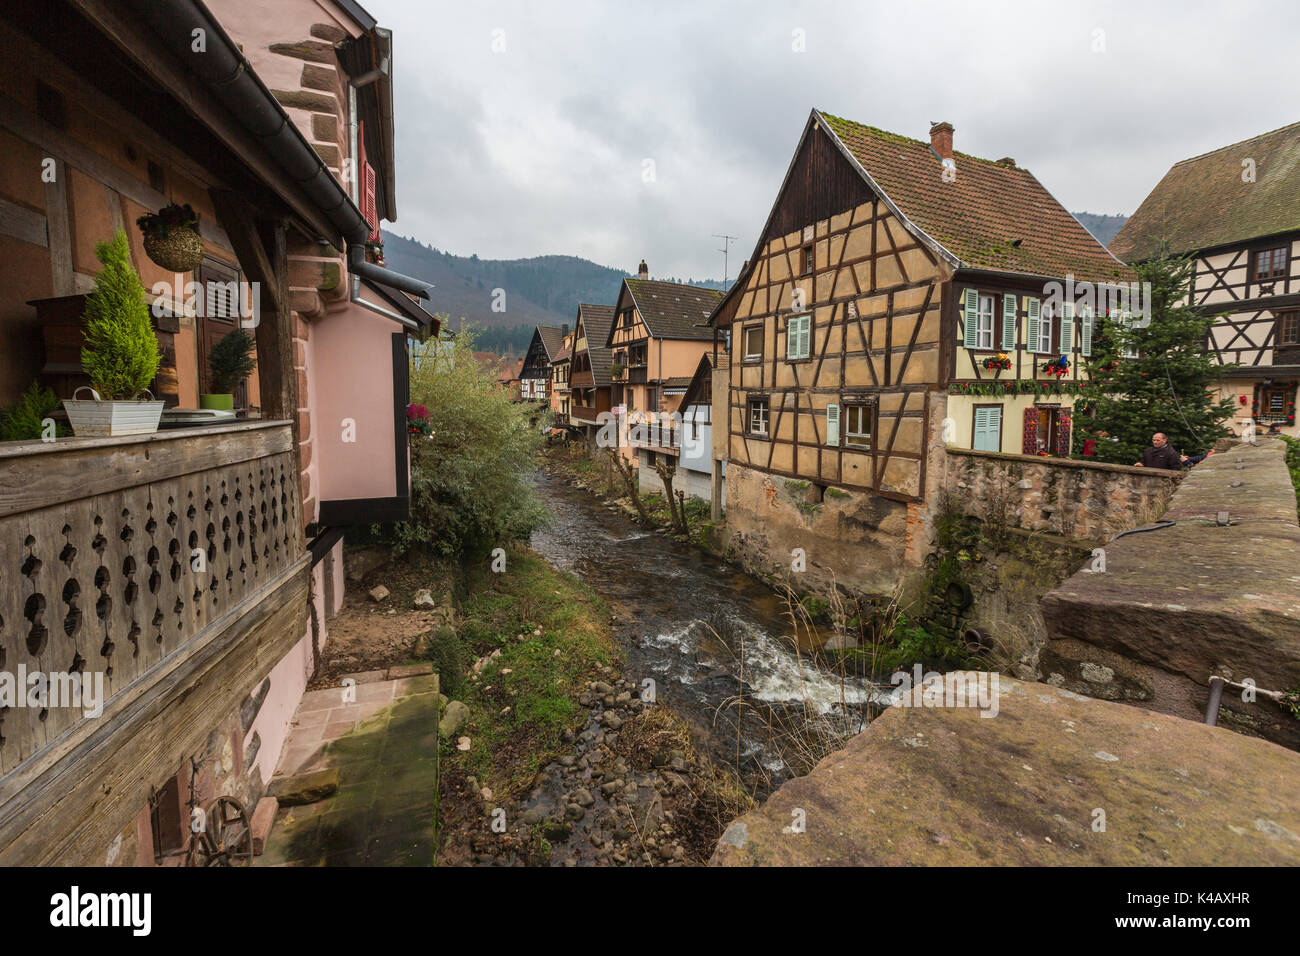 L'architecture typique de la vieille ville médiévale et le pont sur la rivière Weiss Kaysersberg Haut-Rhin Alsace France Europe Banque D'Images